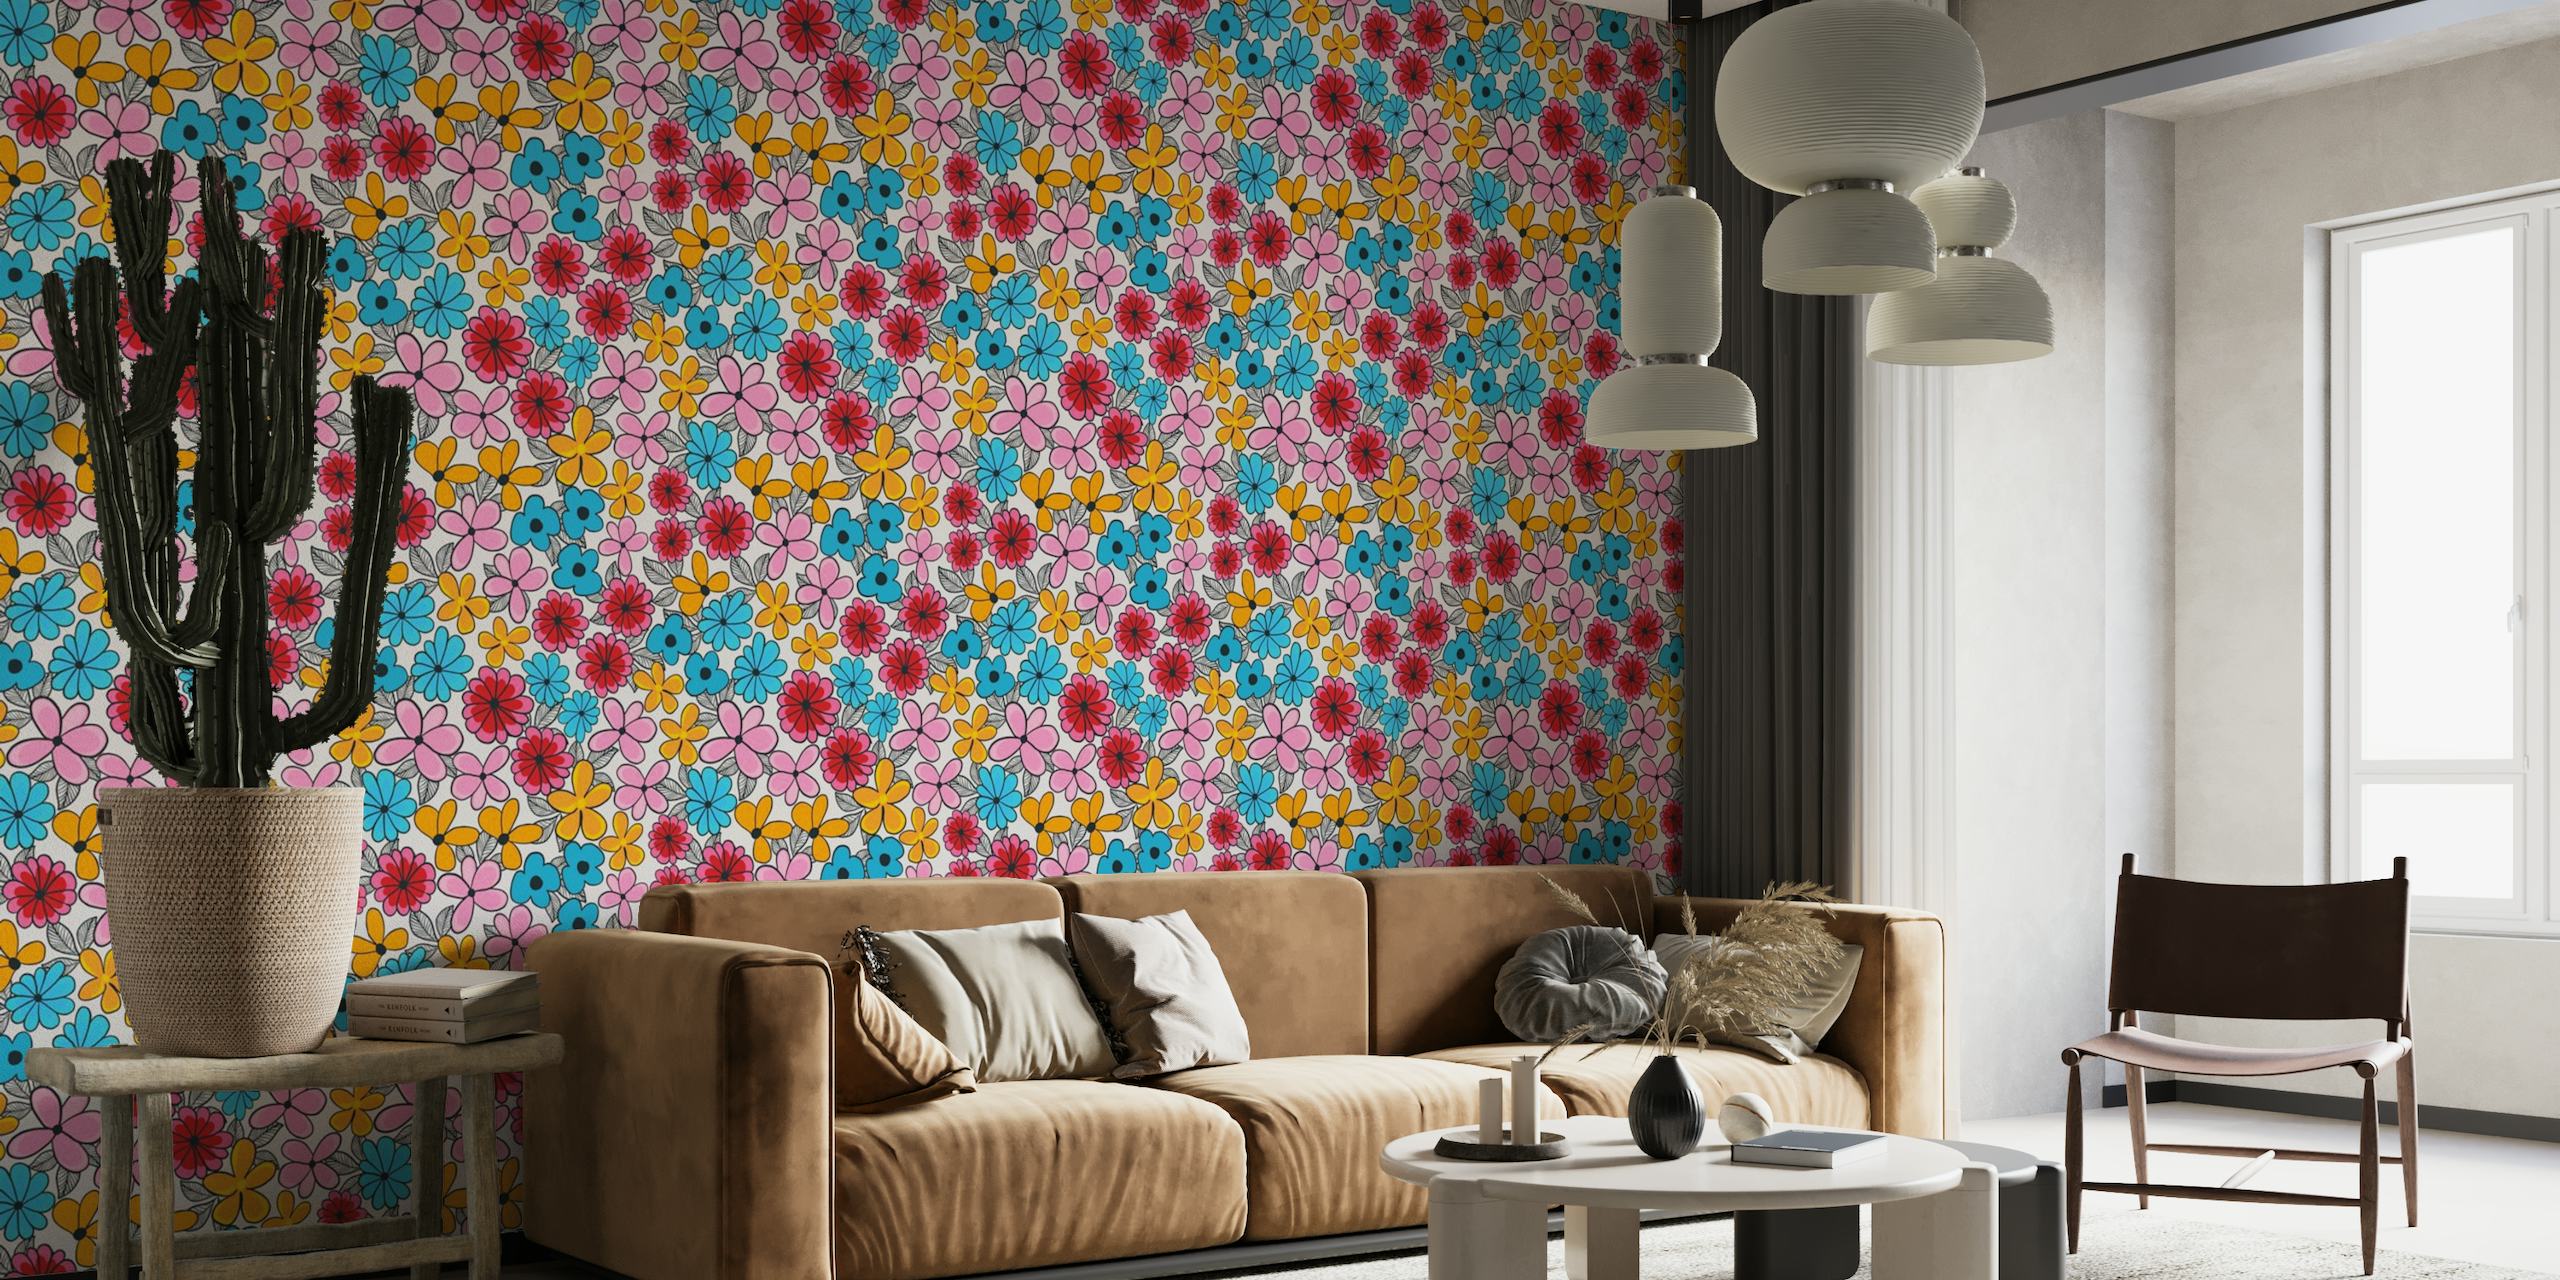 Kleurrijke zomerbloemmotief muurschildering met roze, blauwe en gele bloemen